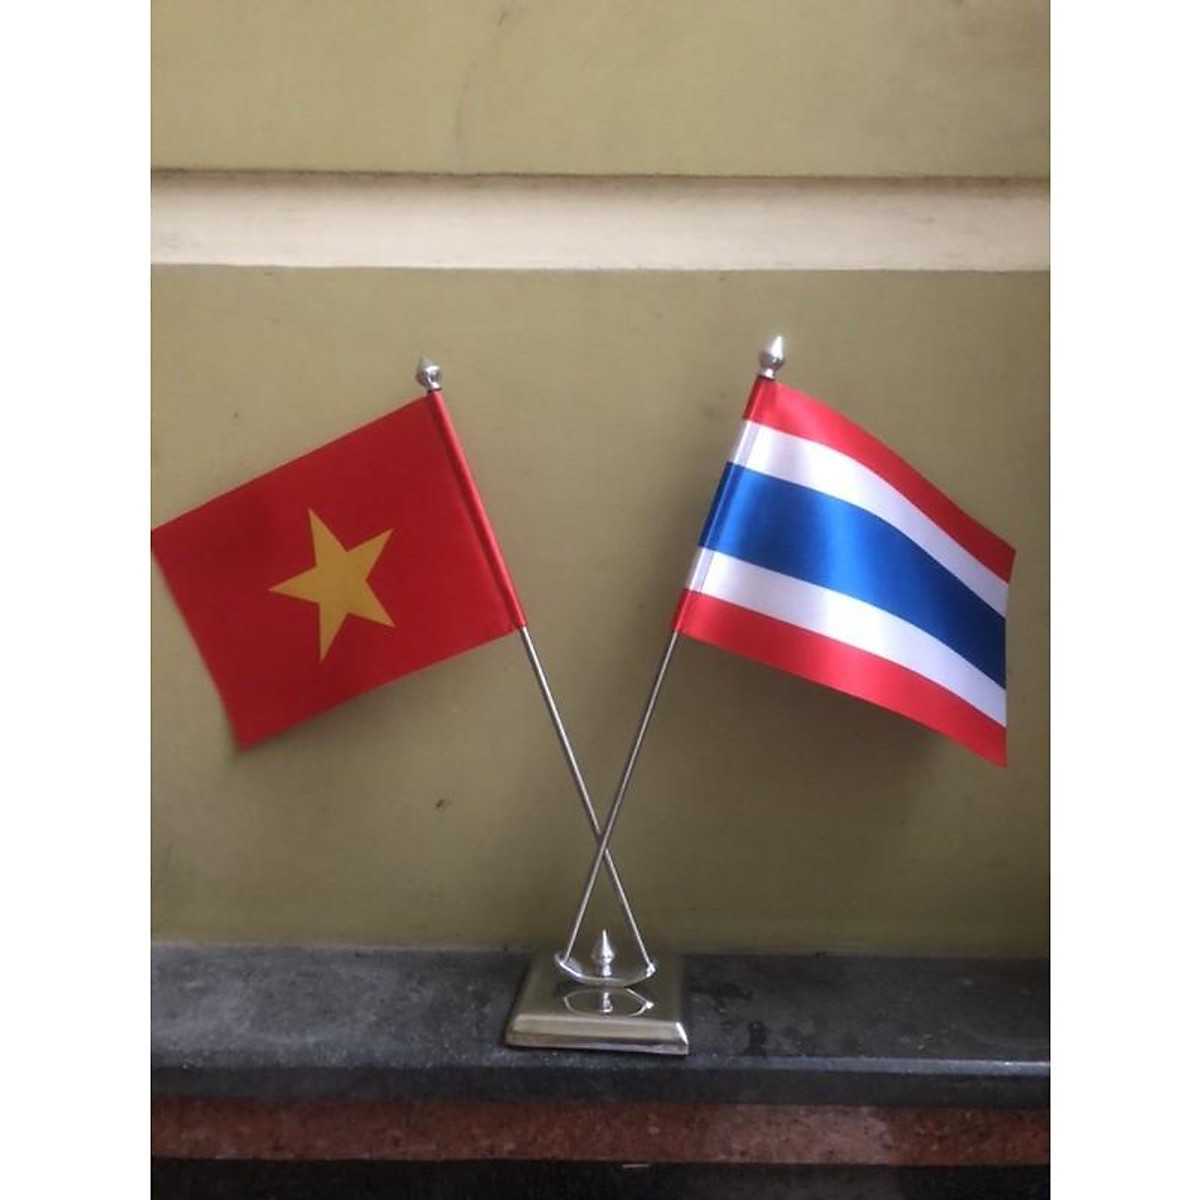 Cờ Việt Nam-Thái Lan: 
Năm 2024, cờ Việt Nam-Thái Lan sẽ được rút đến gần hơn trong mối quan hệ giữa hai nước. Cờ sẽ không chỉ là biểu tượng của sự đoàn kết hai quốc gia mà còn thể hiện cả tình thân hữu và tình đồng hương giữa hai dân tộc. Hình ảnh cờ sẽ được phát triển nhiều hơn, truyền tải thông điệp về tình cảm, tôn trọng và chia sẻ trong cộng đồng.